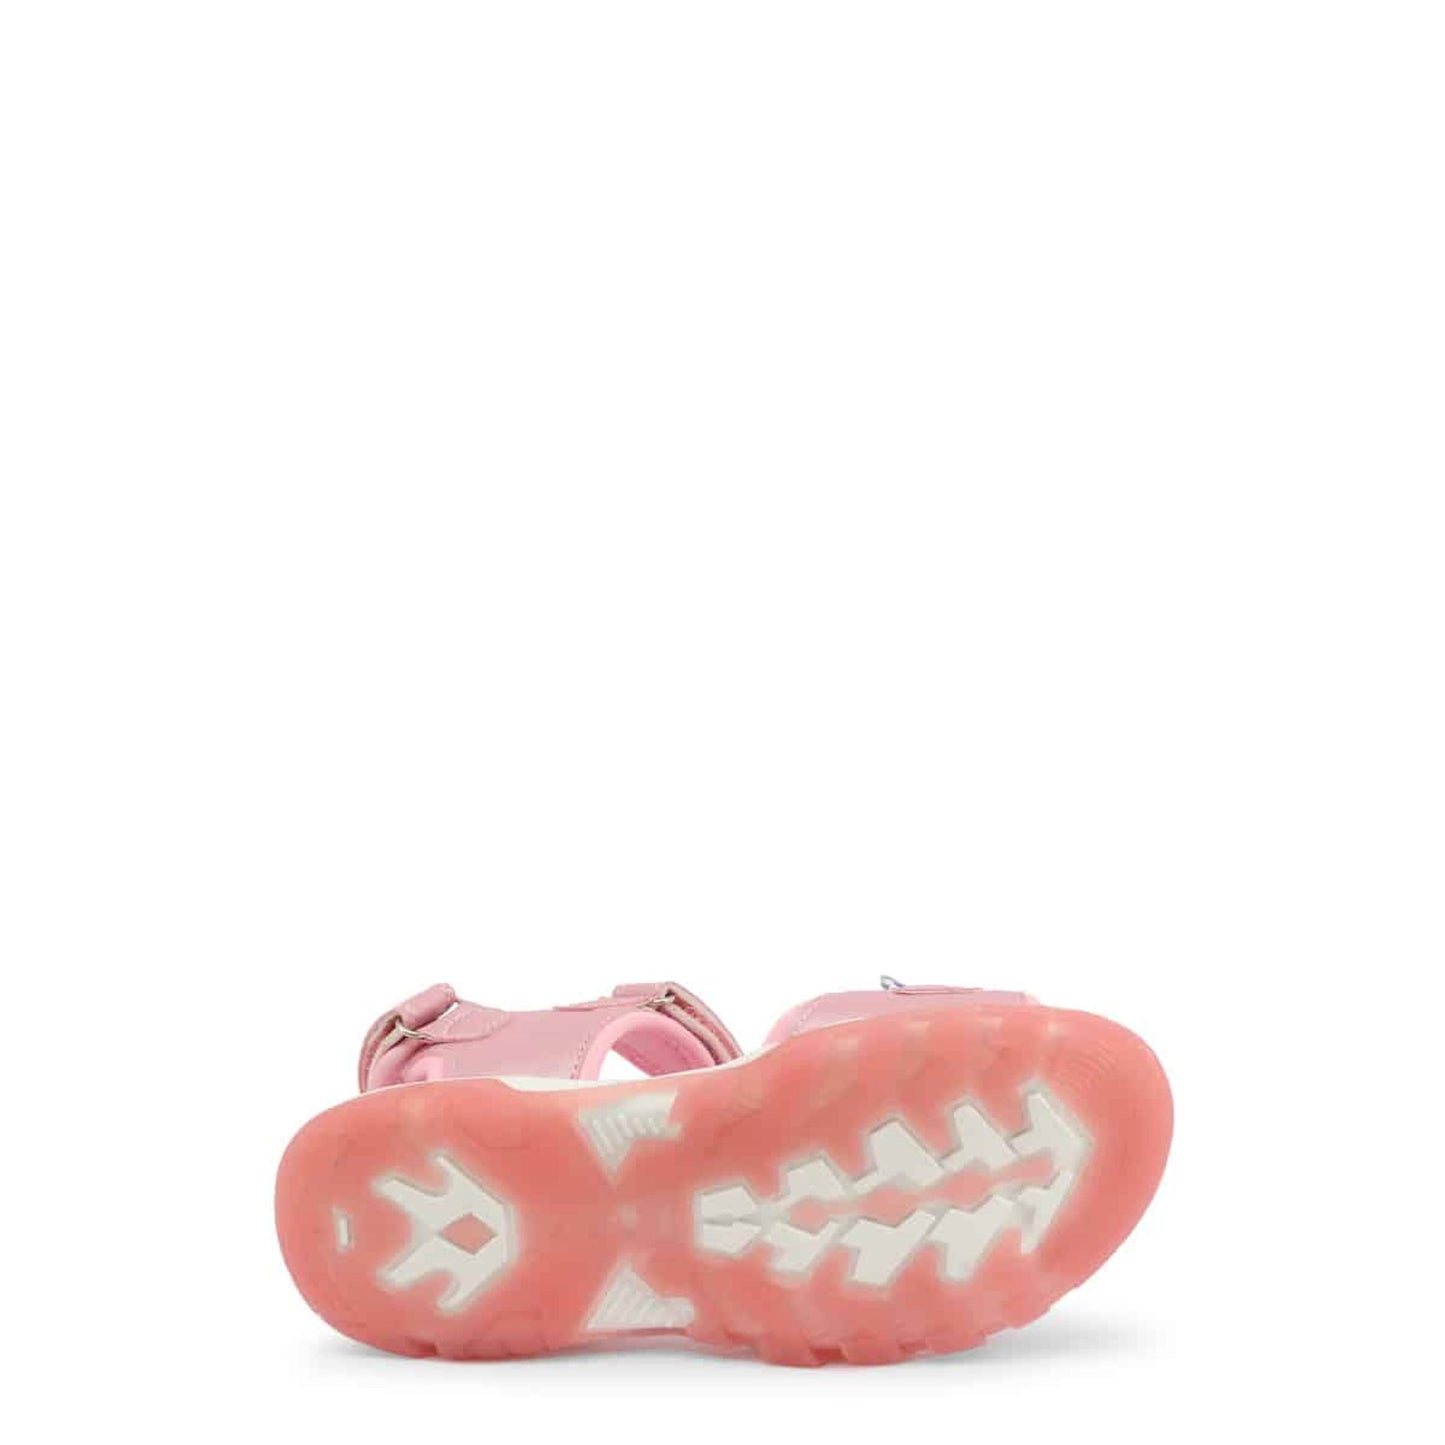 Sandali bambina rosa con doppio strappo